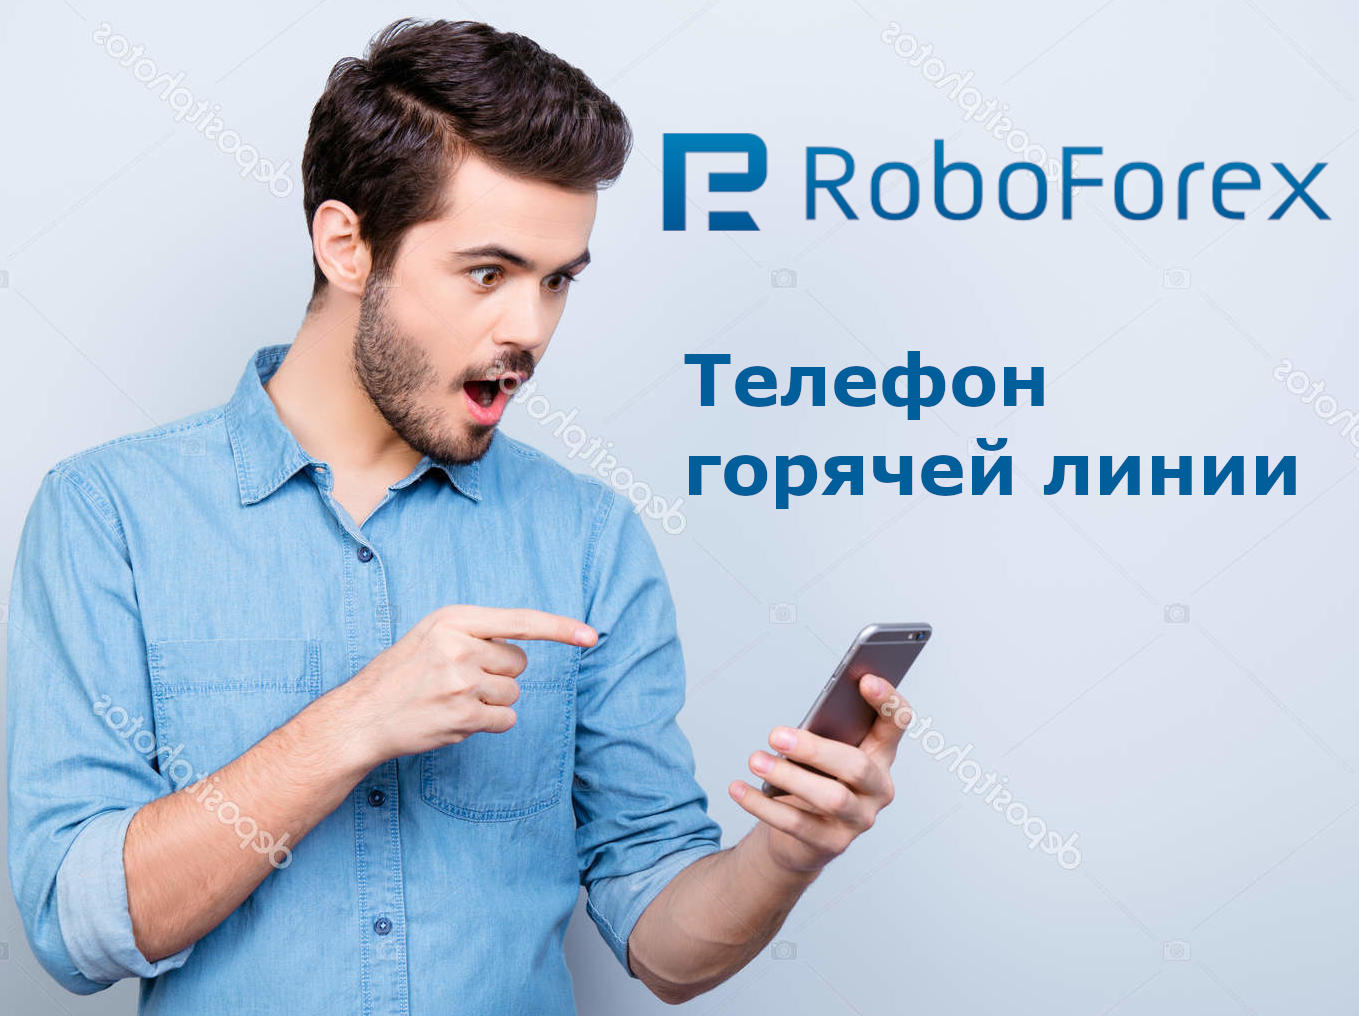 Телефон горячей линии Робофорекс